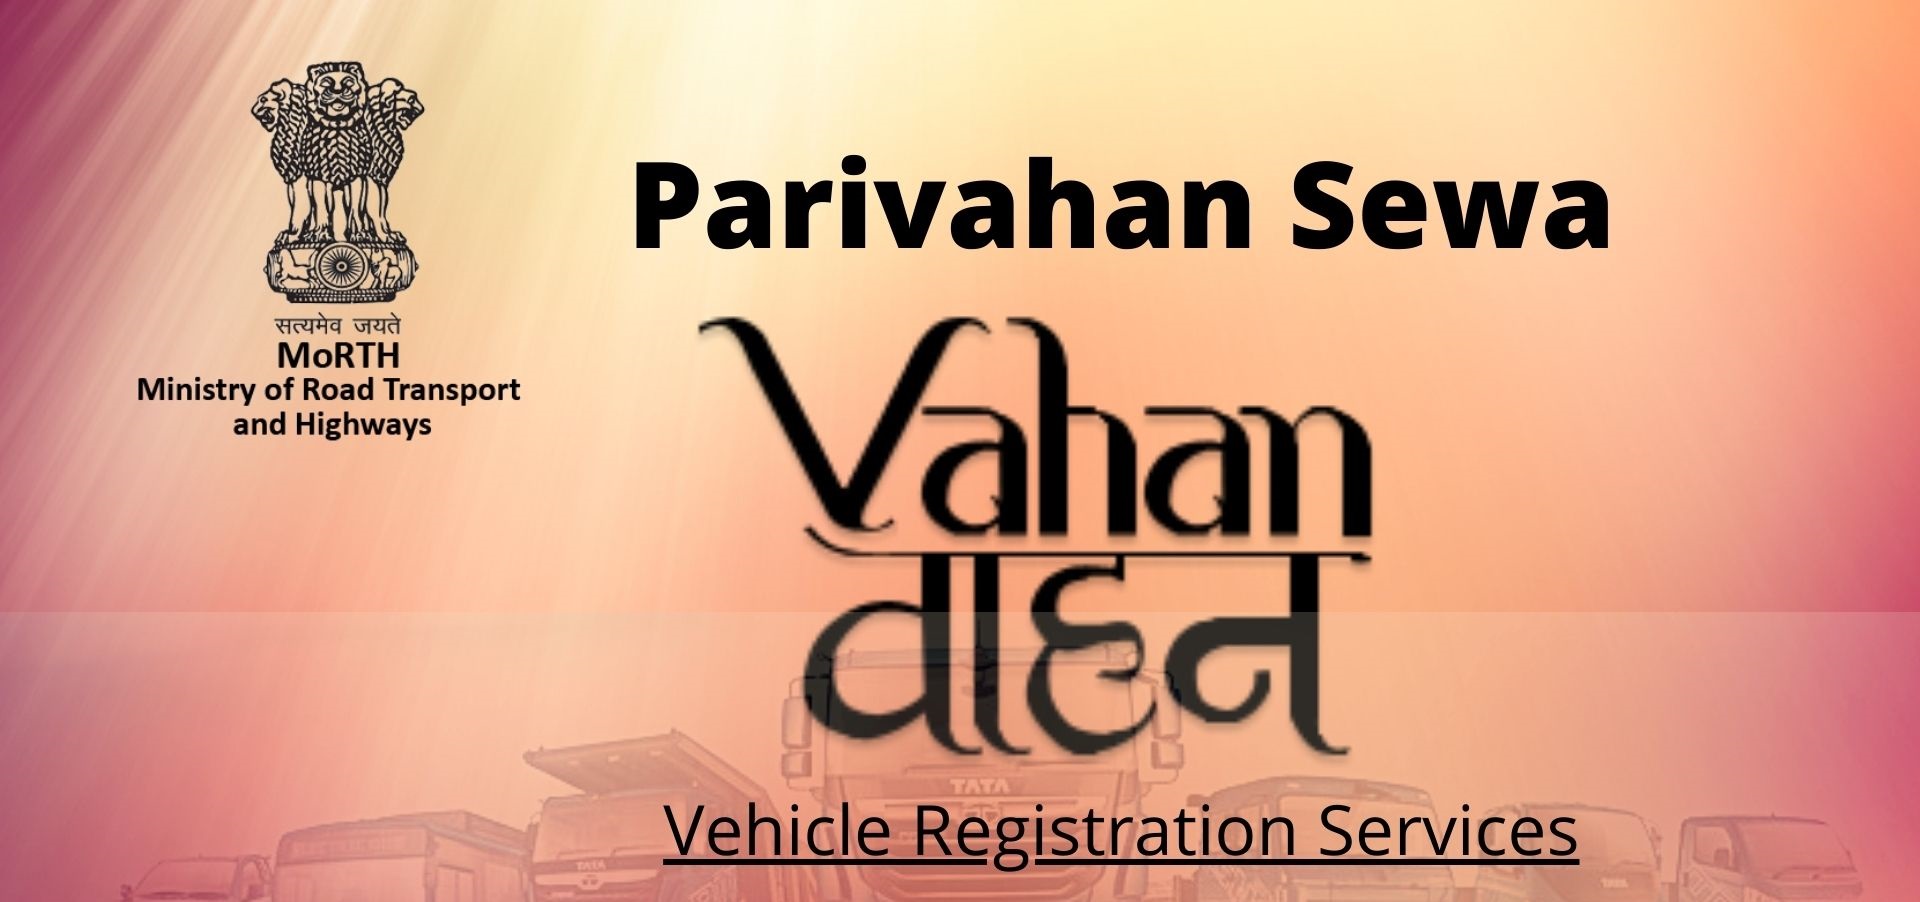 parivahan.gov.in Login, Parivahan Seva Vehicle Details, sarathi.parivahan.gov.in Login, MParivahan Online, Sarathi Parivahan Application Status, parivahan.gov.in RC Status, Vahan Parivahan, Parivahan Application Status,